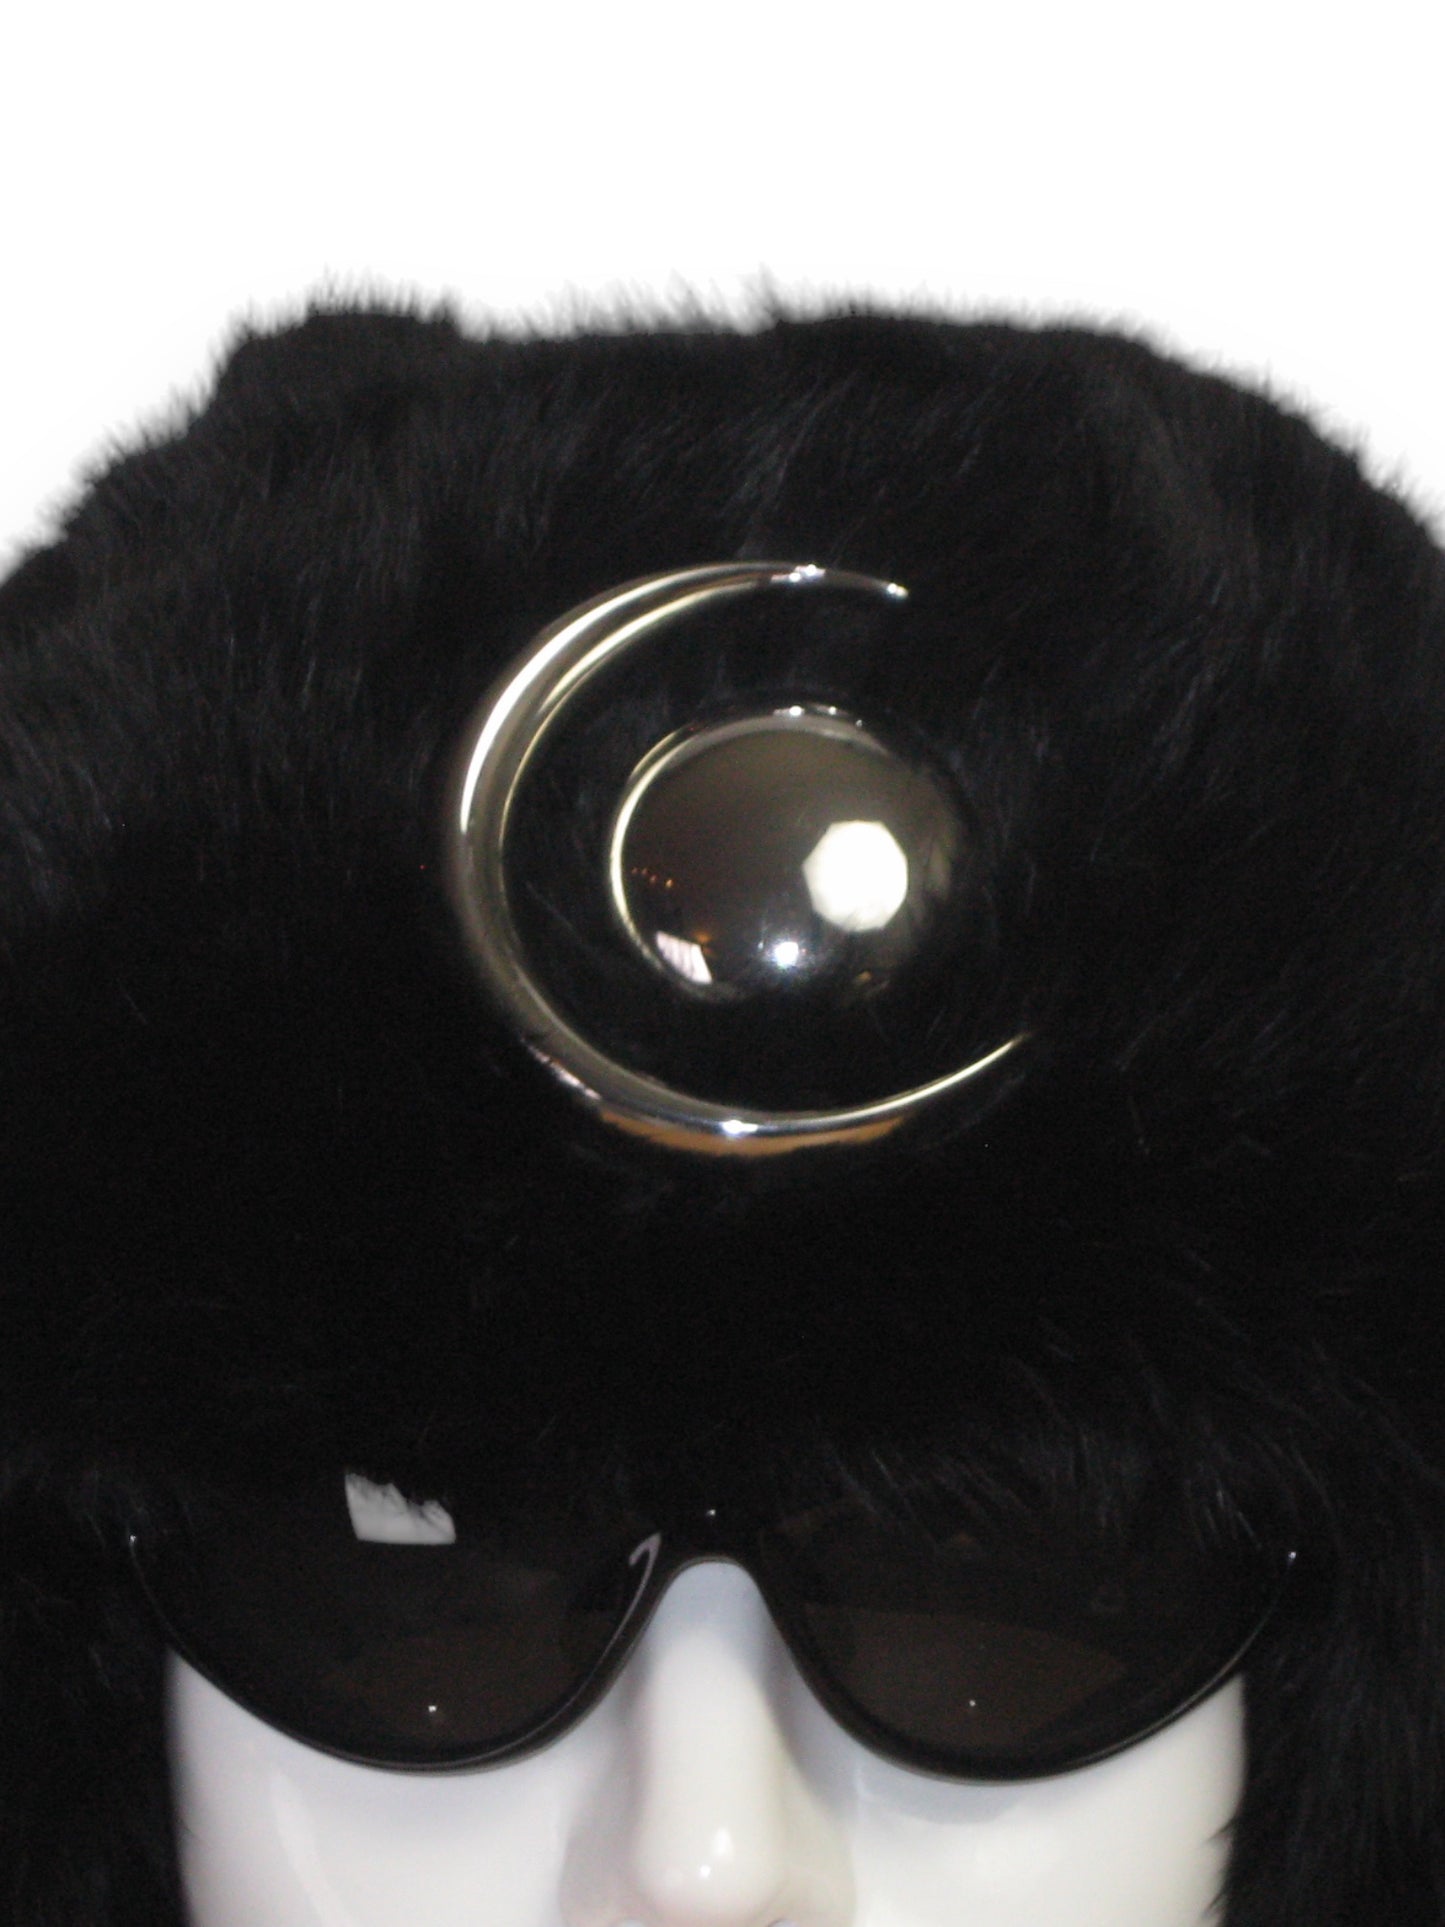 Chthonic Emblem Premium 100% Rabbit Fur Trapper Hat